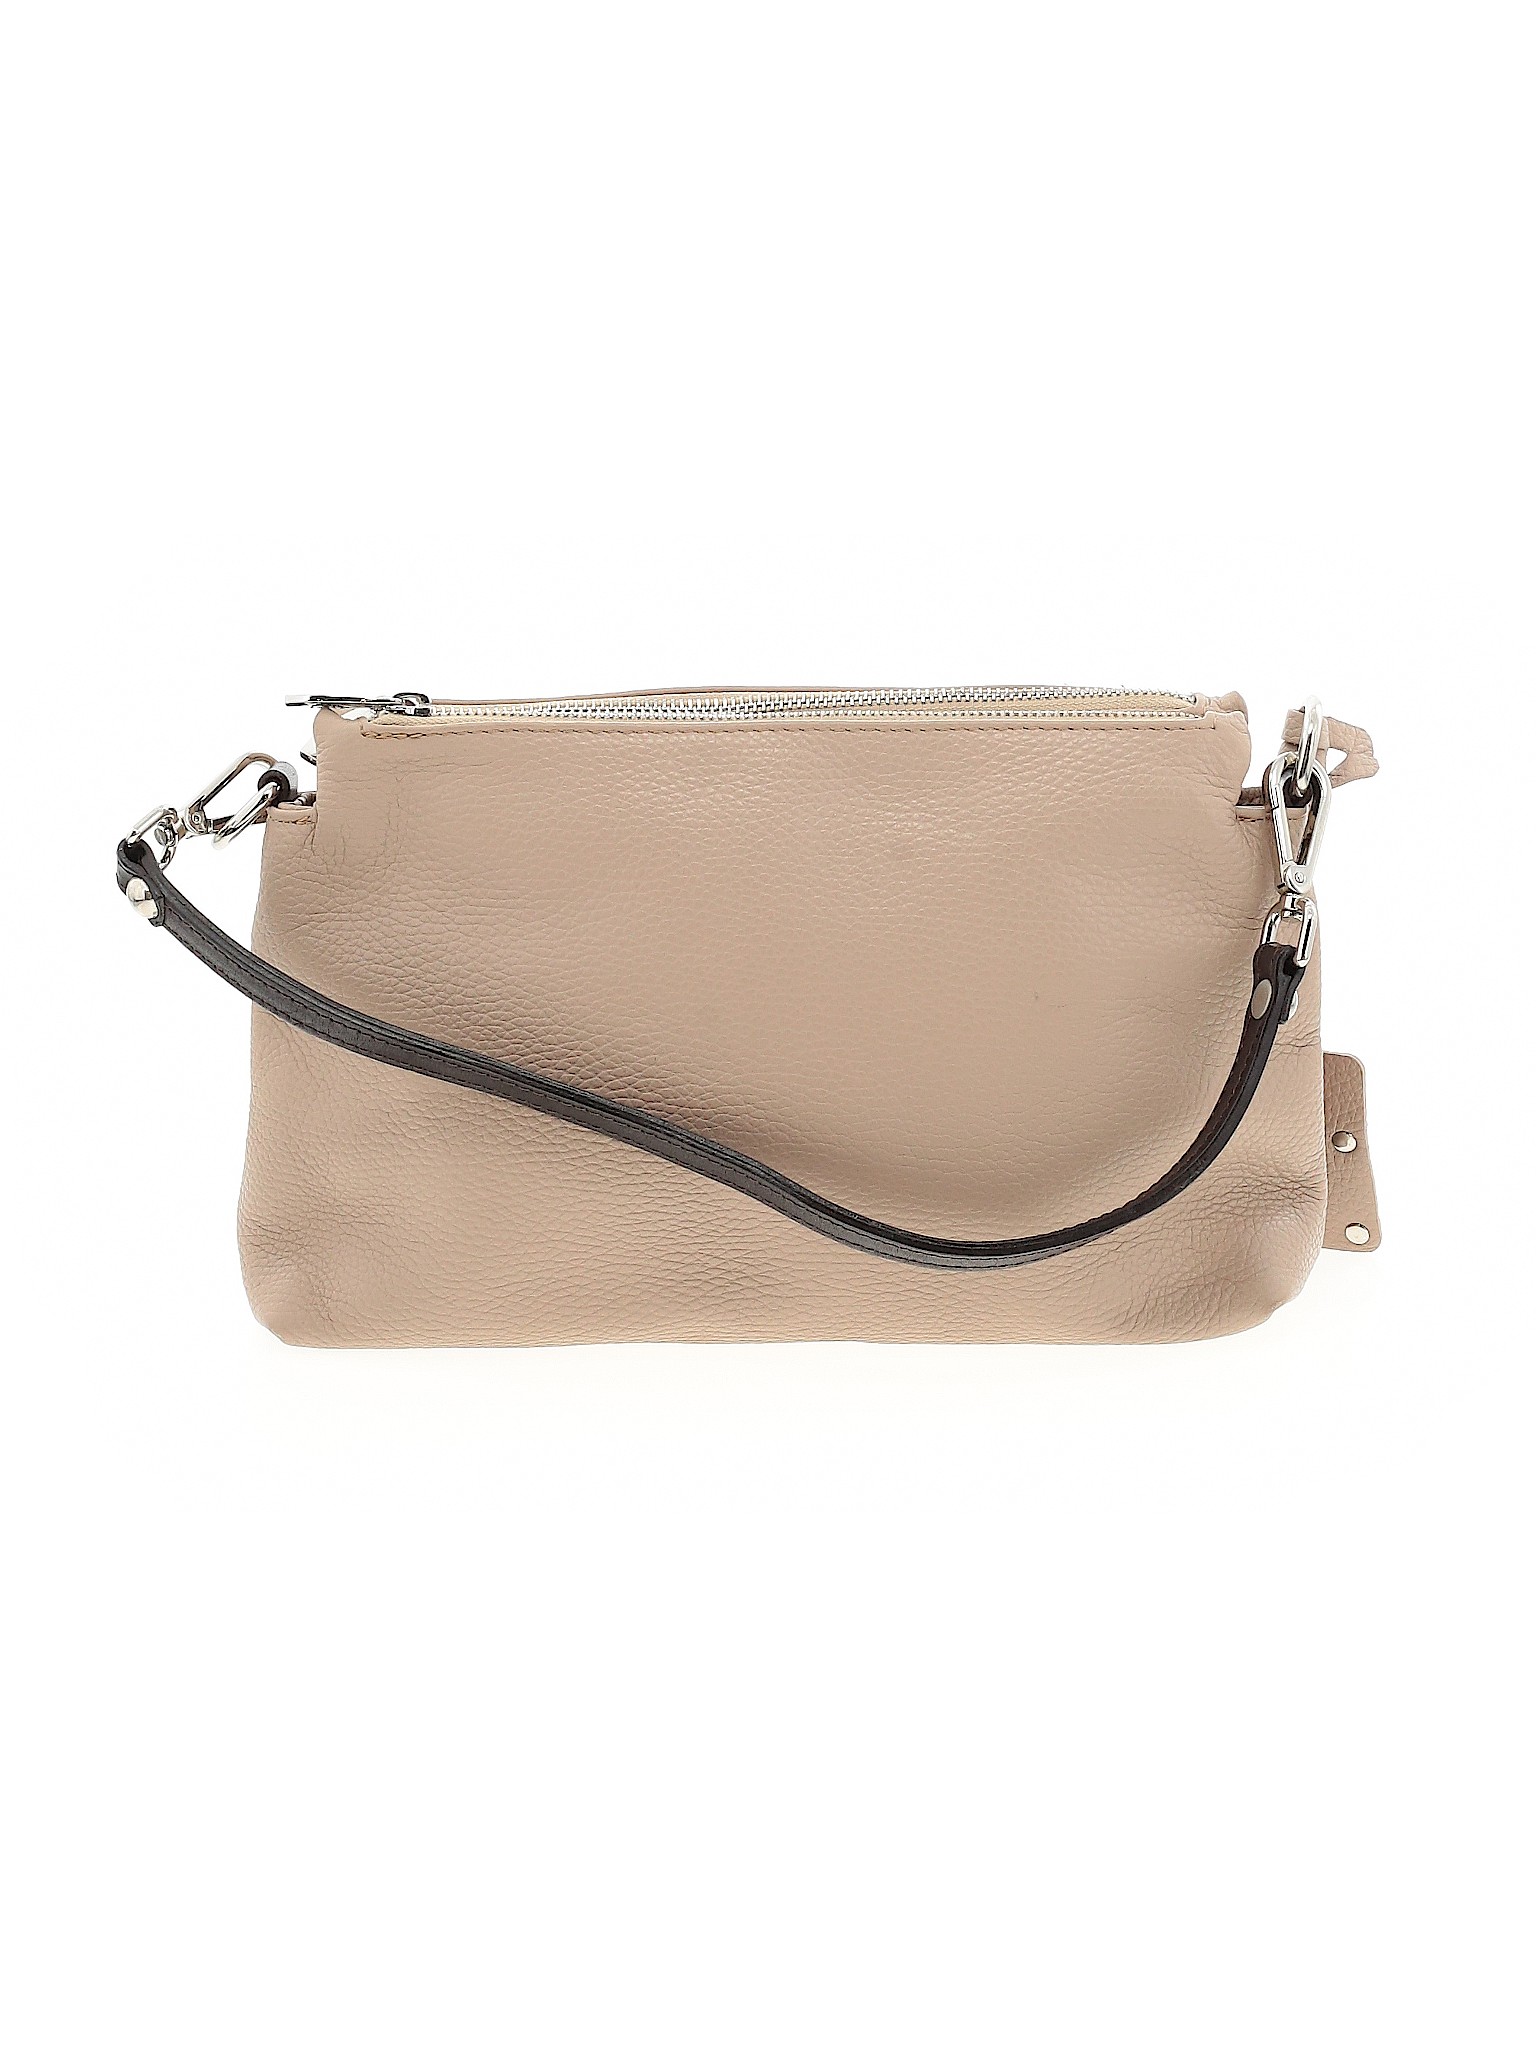 Valentina Women Brown Shoulder Bag One Size | eBay